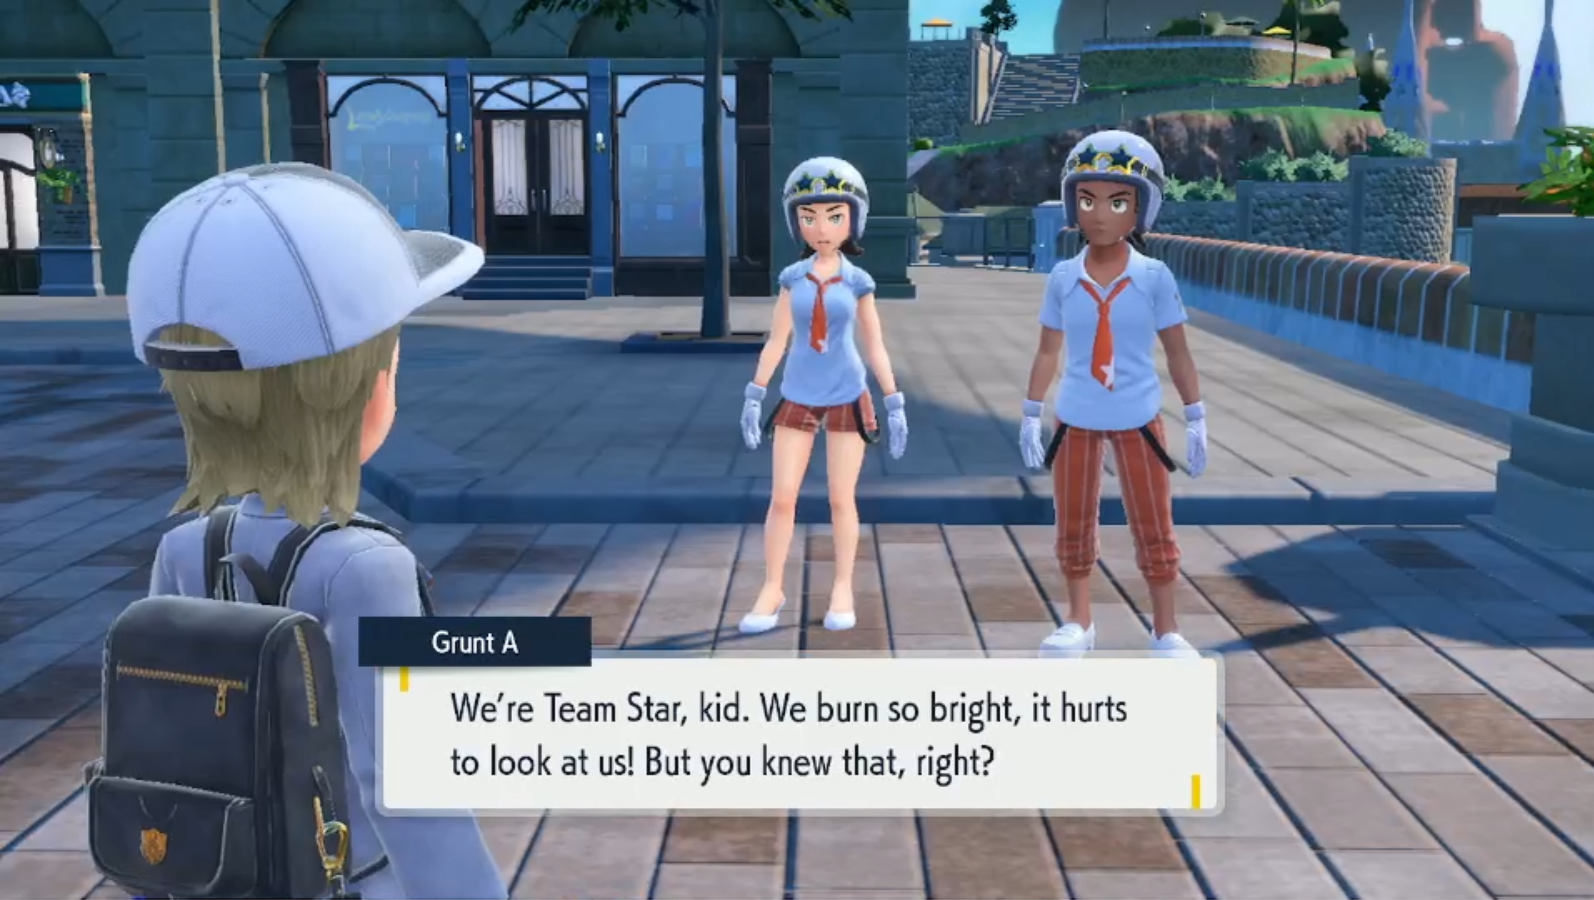 Meet Team Star